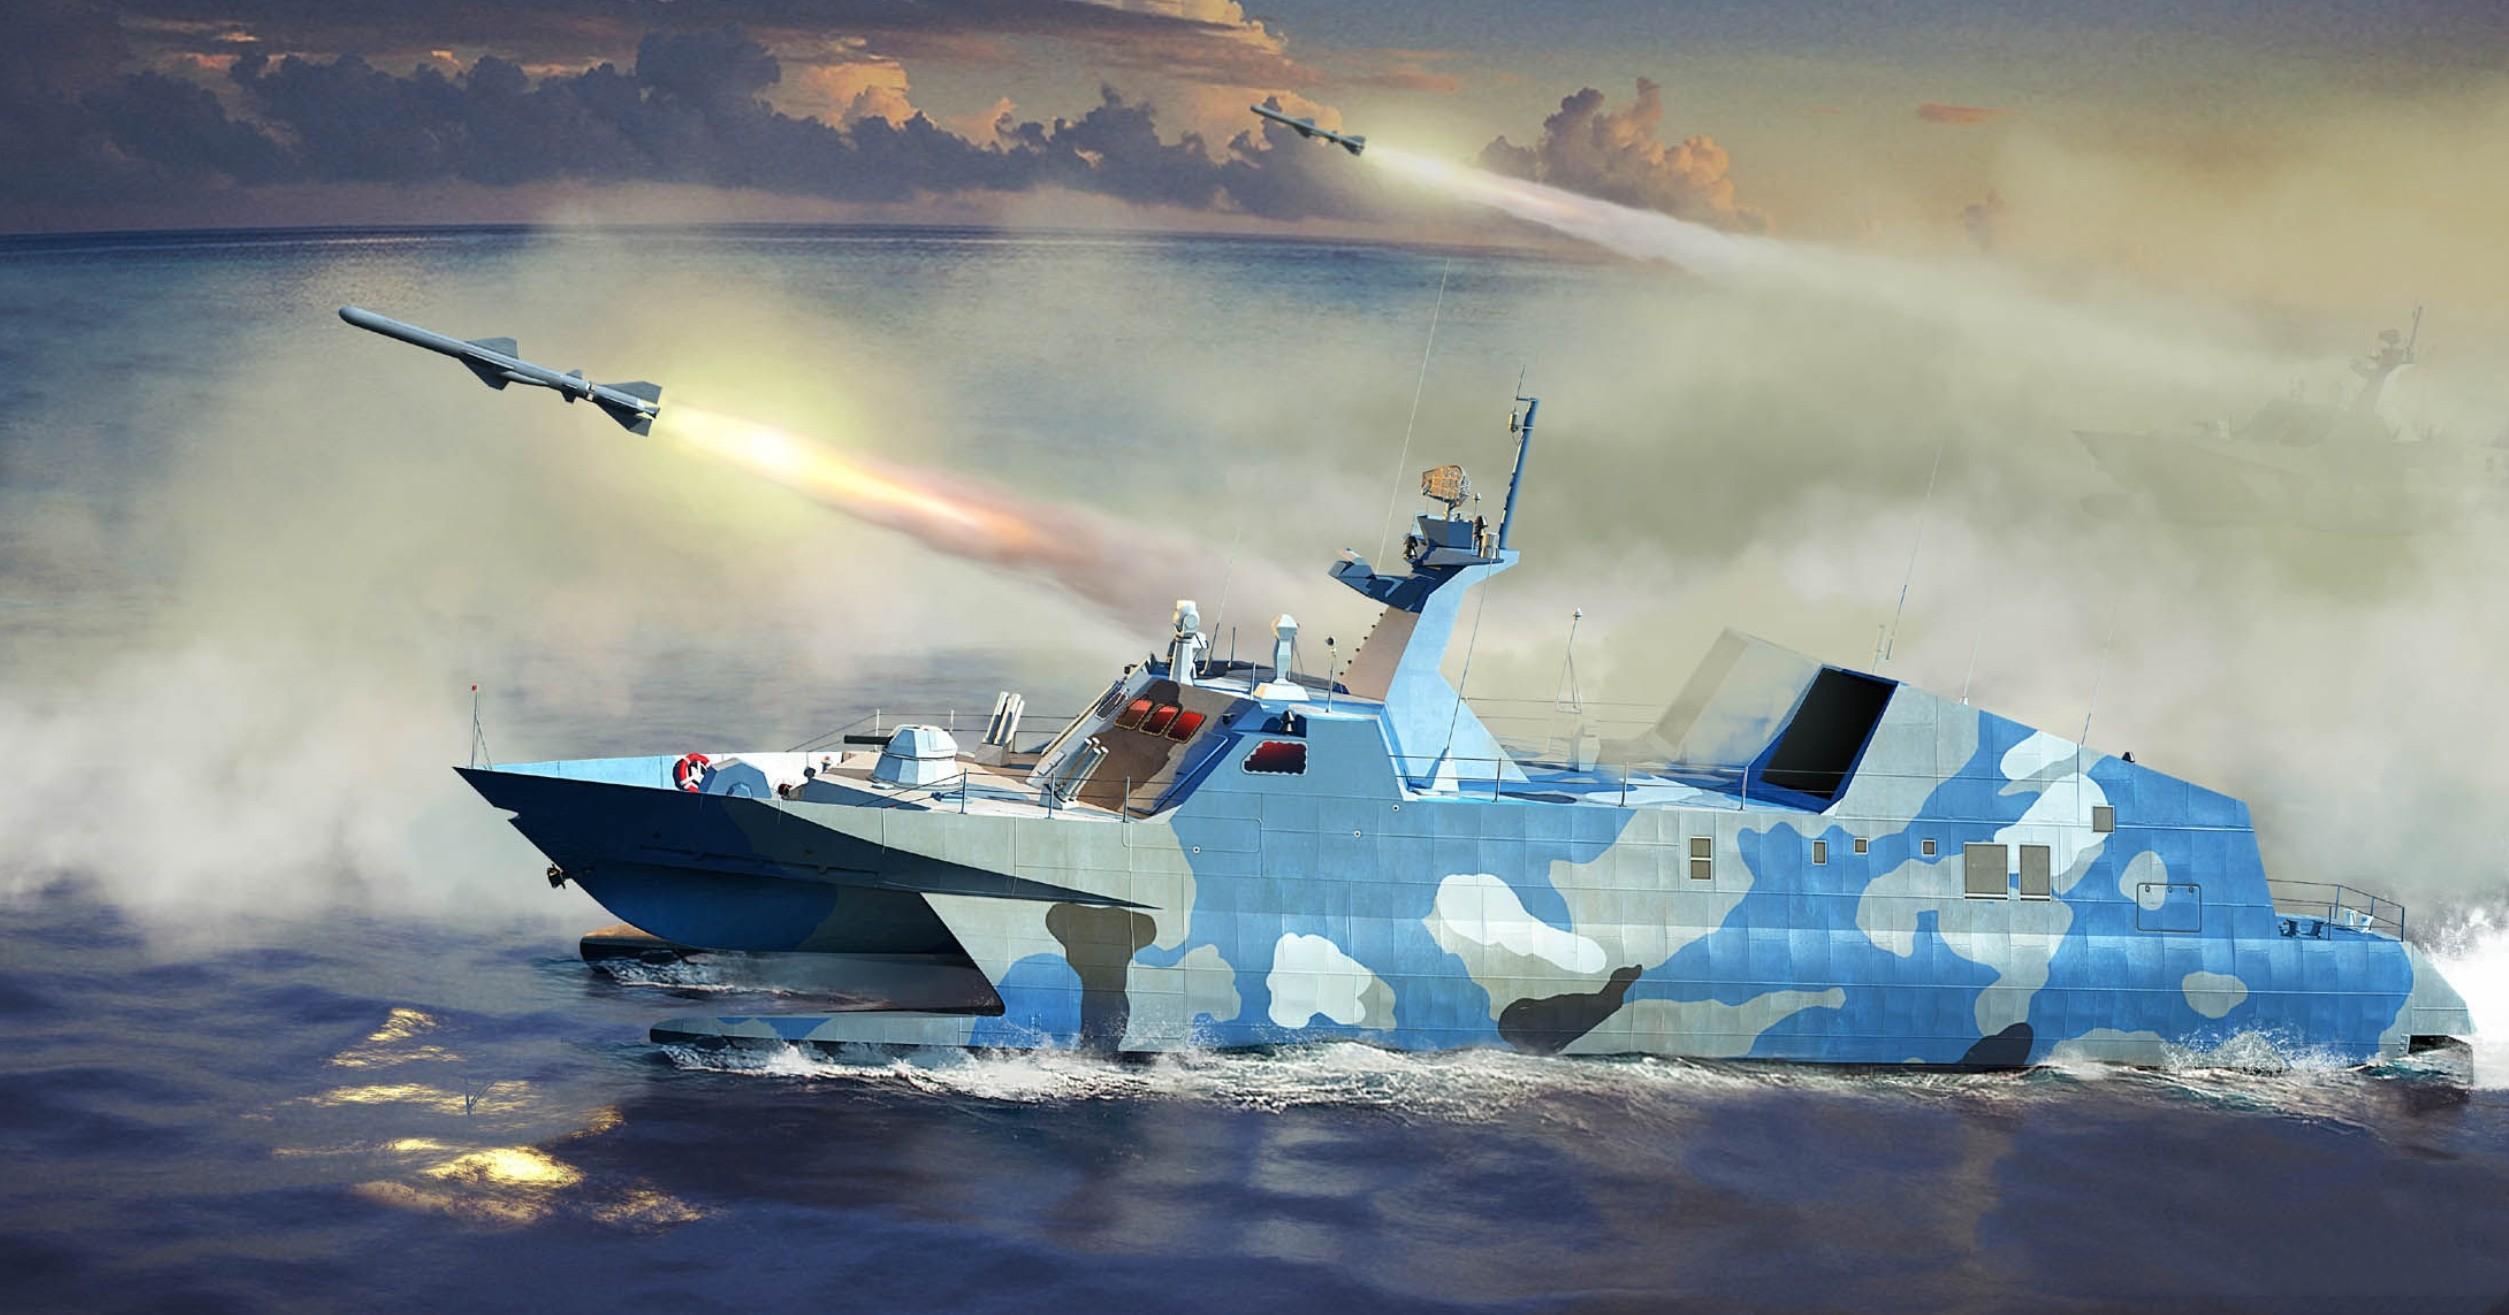 022导弹艇在南海猛烈开火,攻击目标很特别,菲律宾要看清楚了!